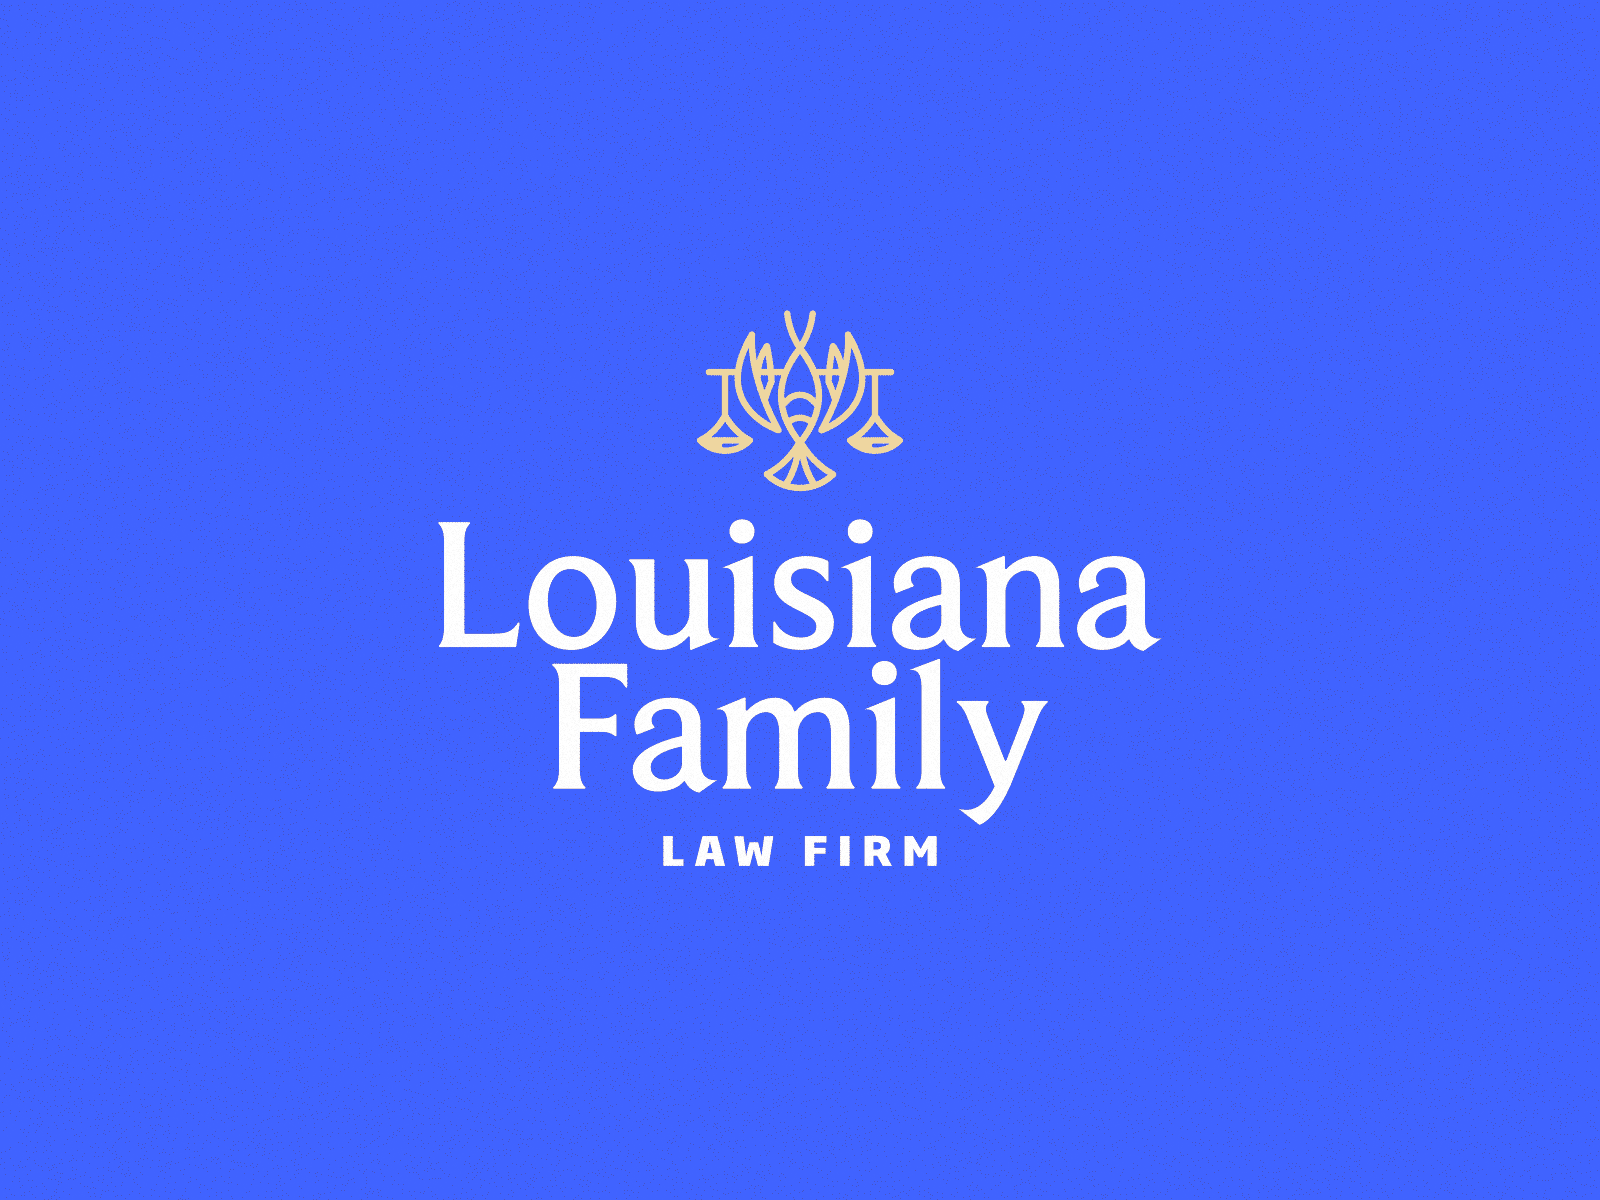 Louisiana Family Law Firm